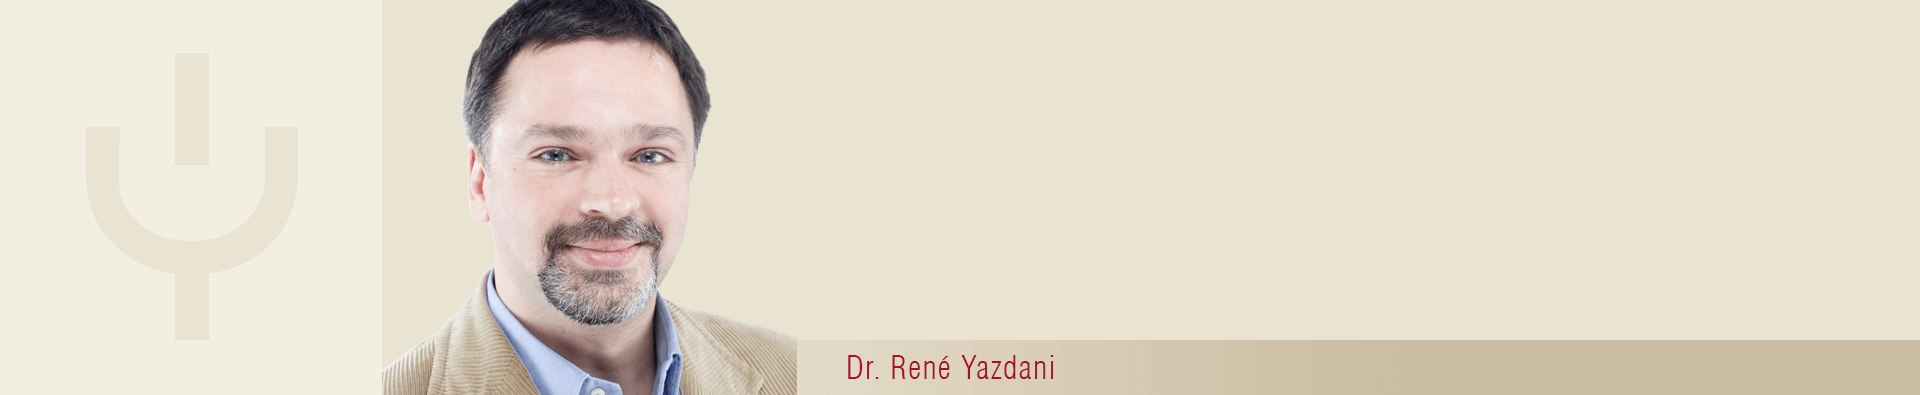 Bilder Dr. Rene Yazdani